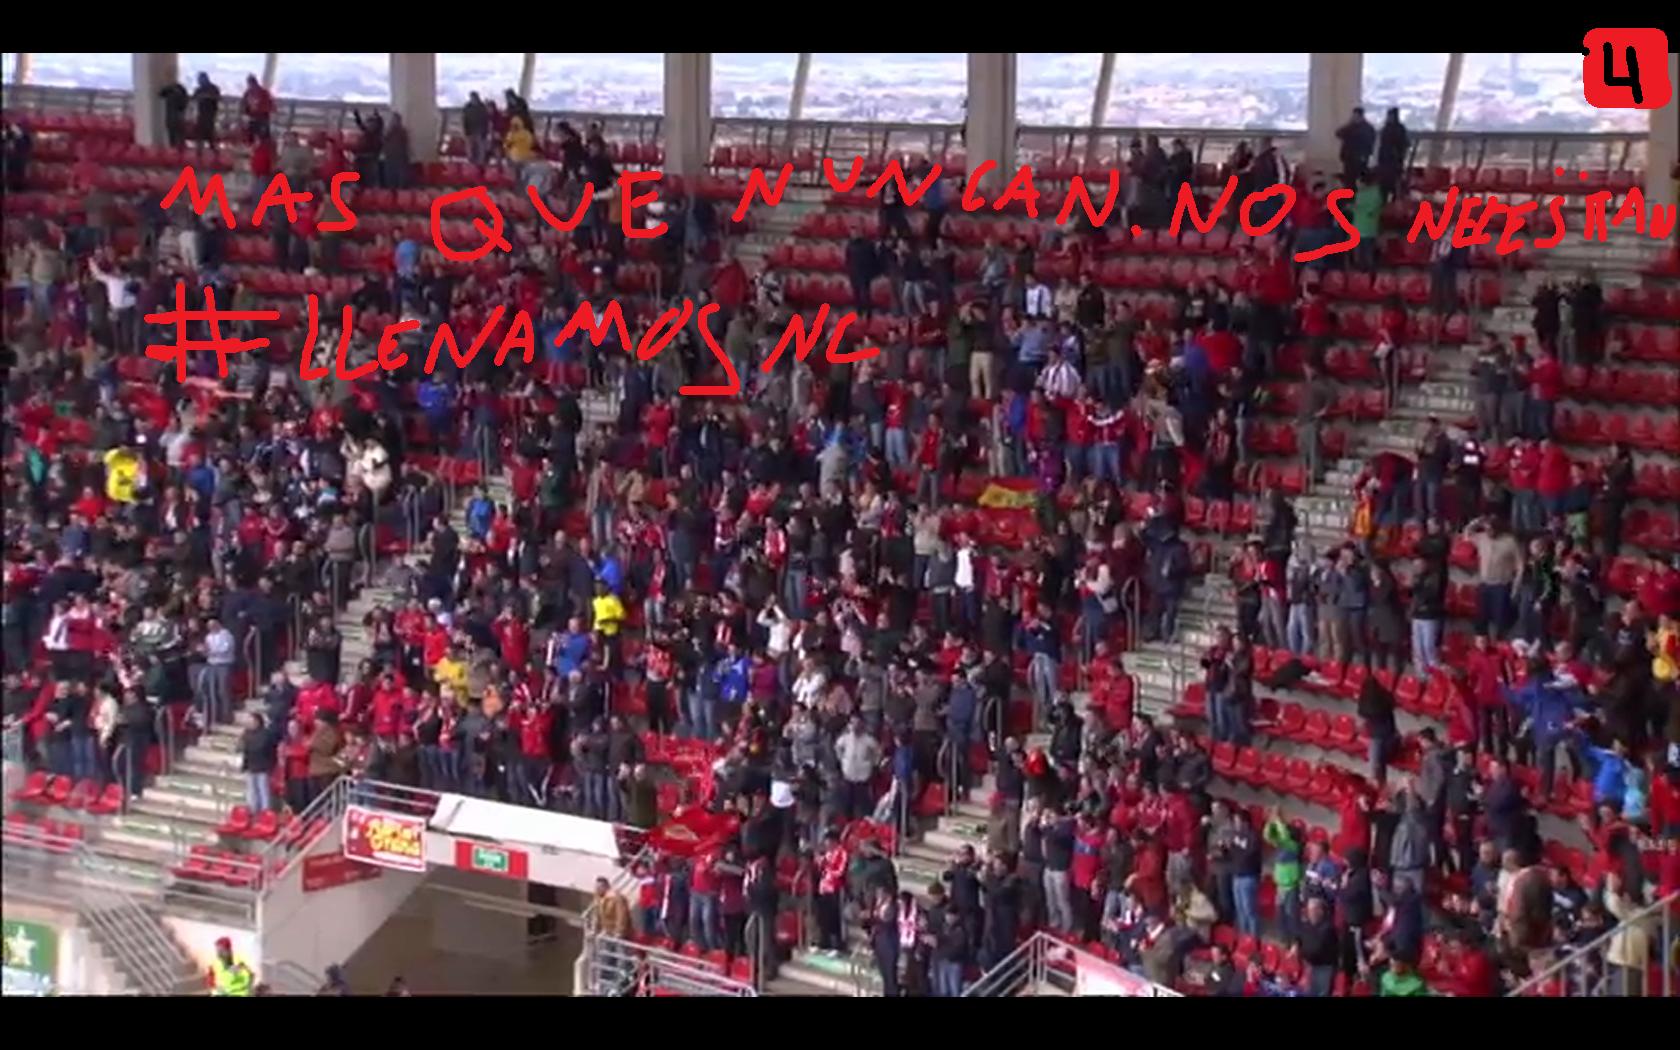 El Real Murcia y los jugadores nos necesitan mas que nunca, #LlenamosNC